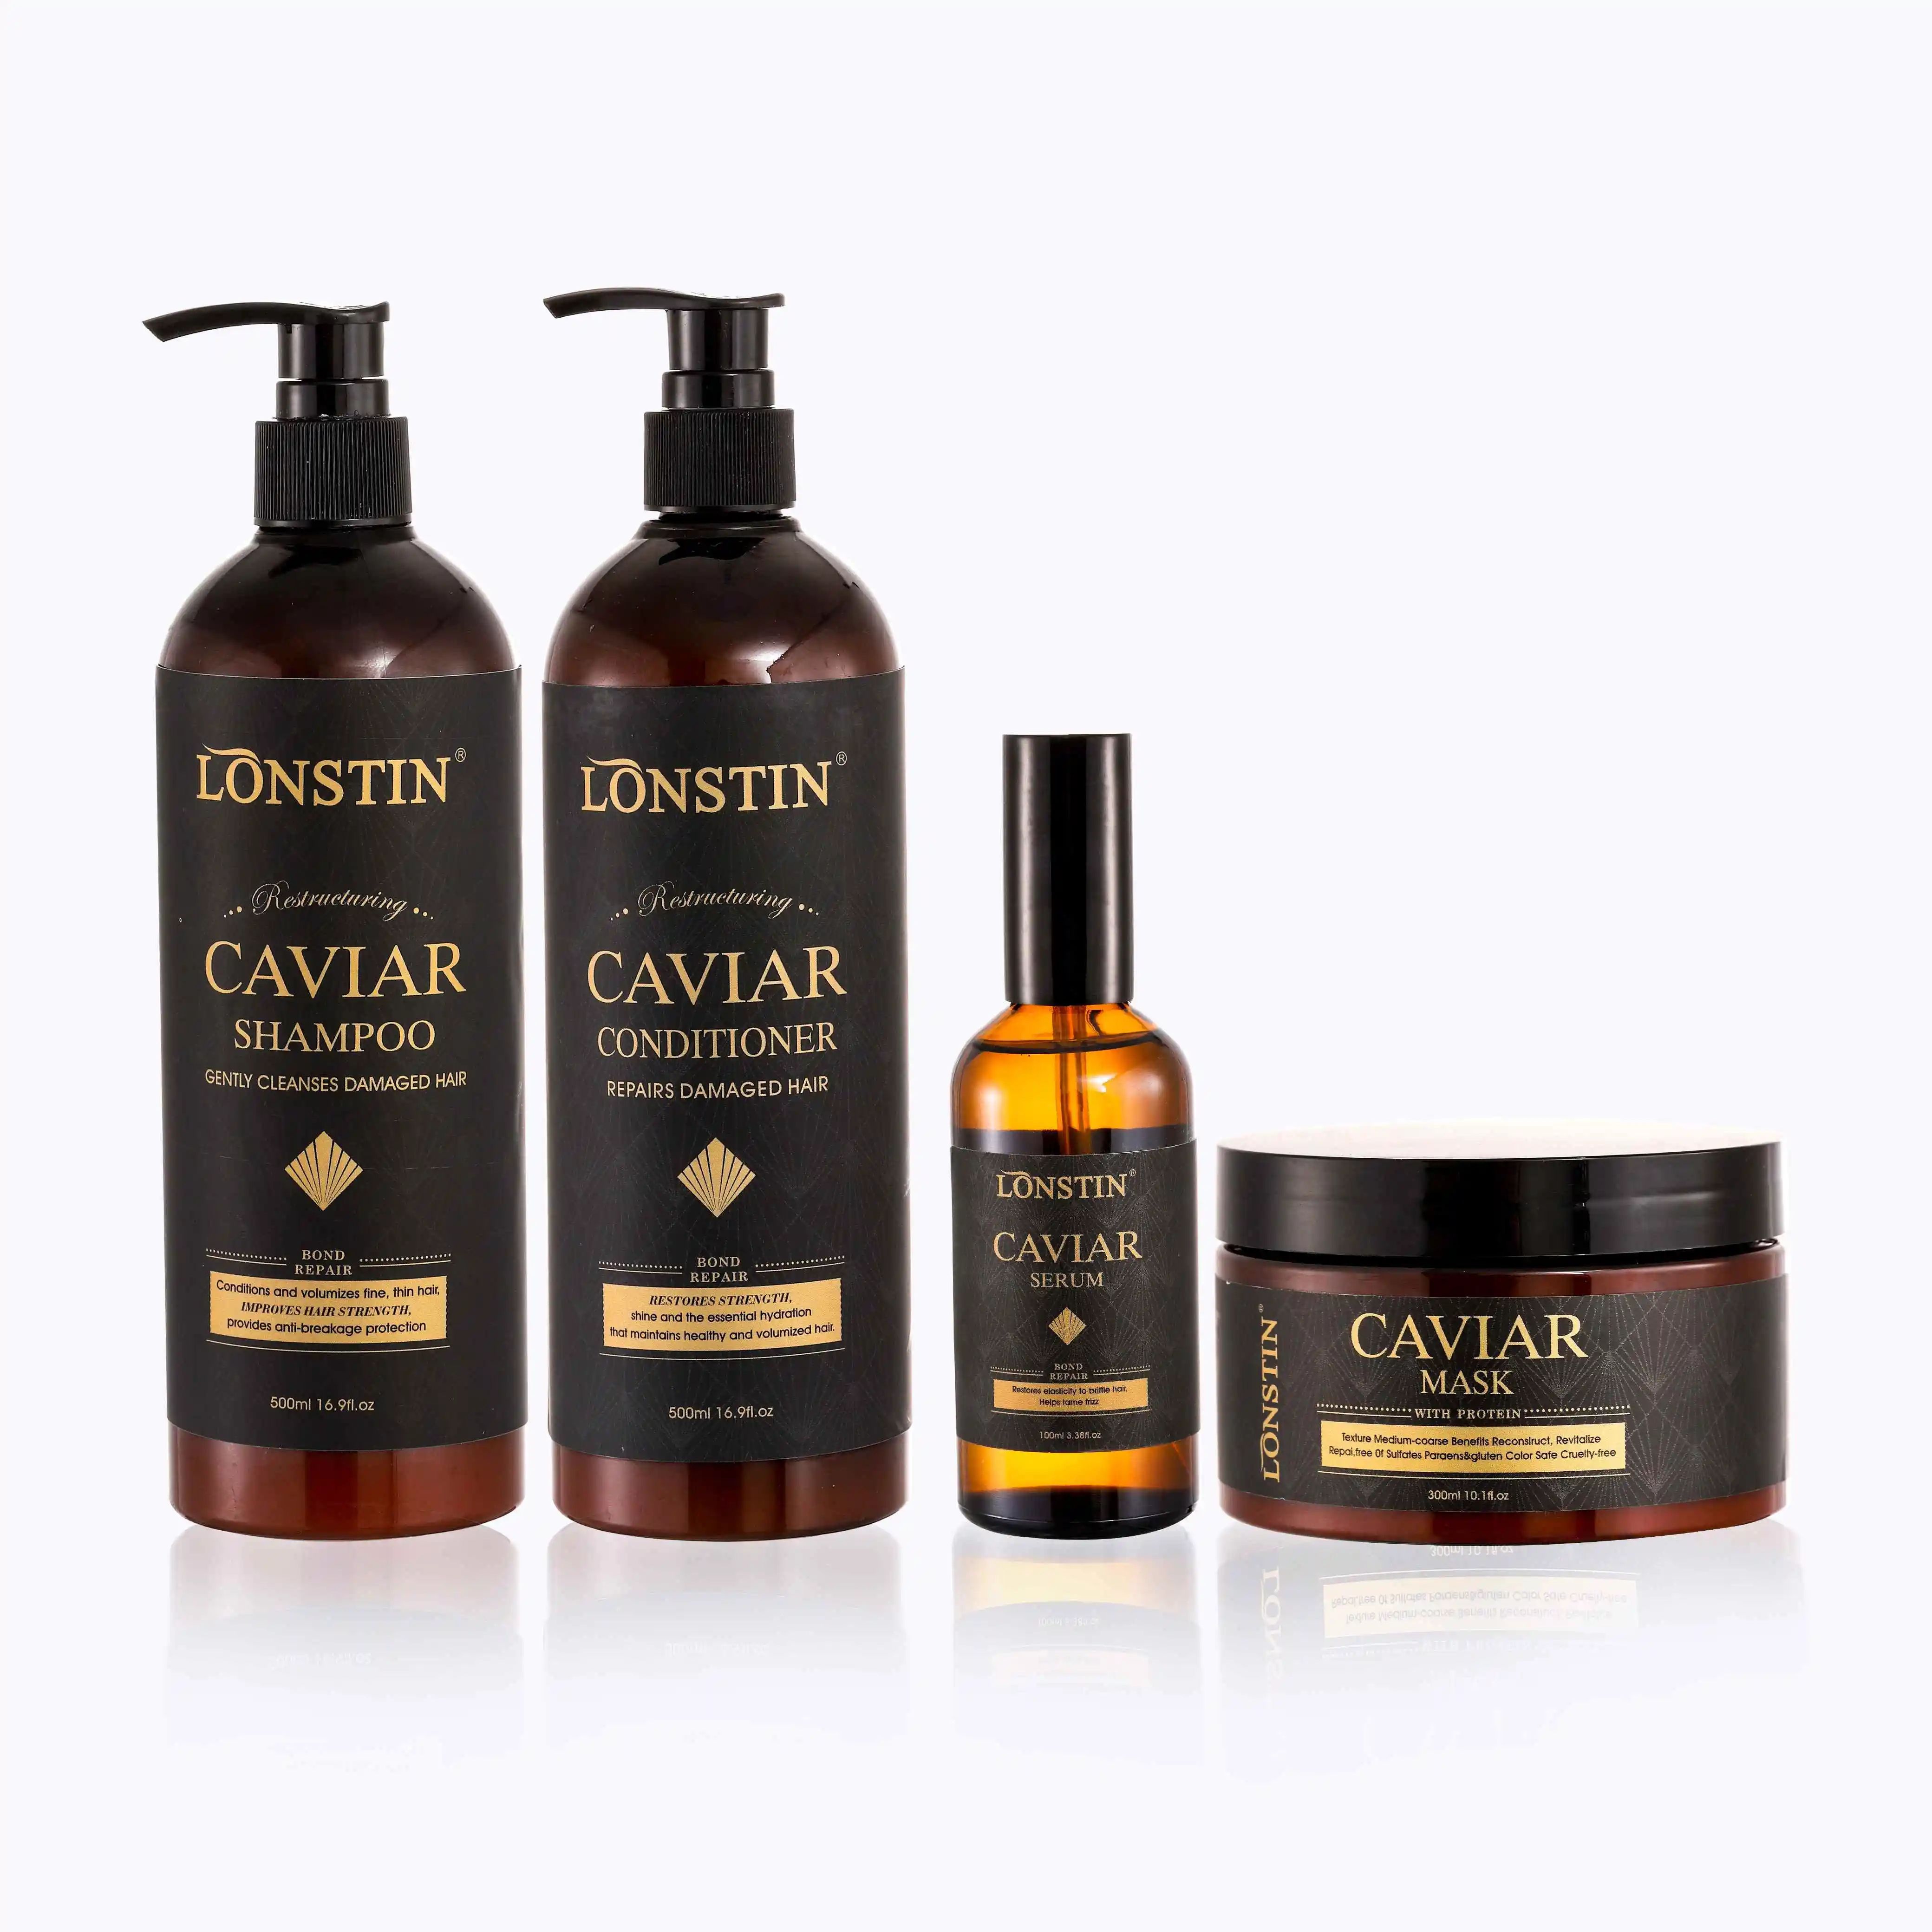 OEM-Kavirialsulfat-freies Shampoo individuelles Logo Luxus-Kinderechtes-Haarpflege-Set Produkte Bio-Protein Kaviar-Shampoo und Conditioner